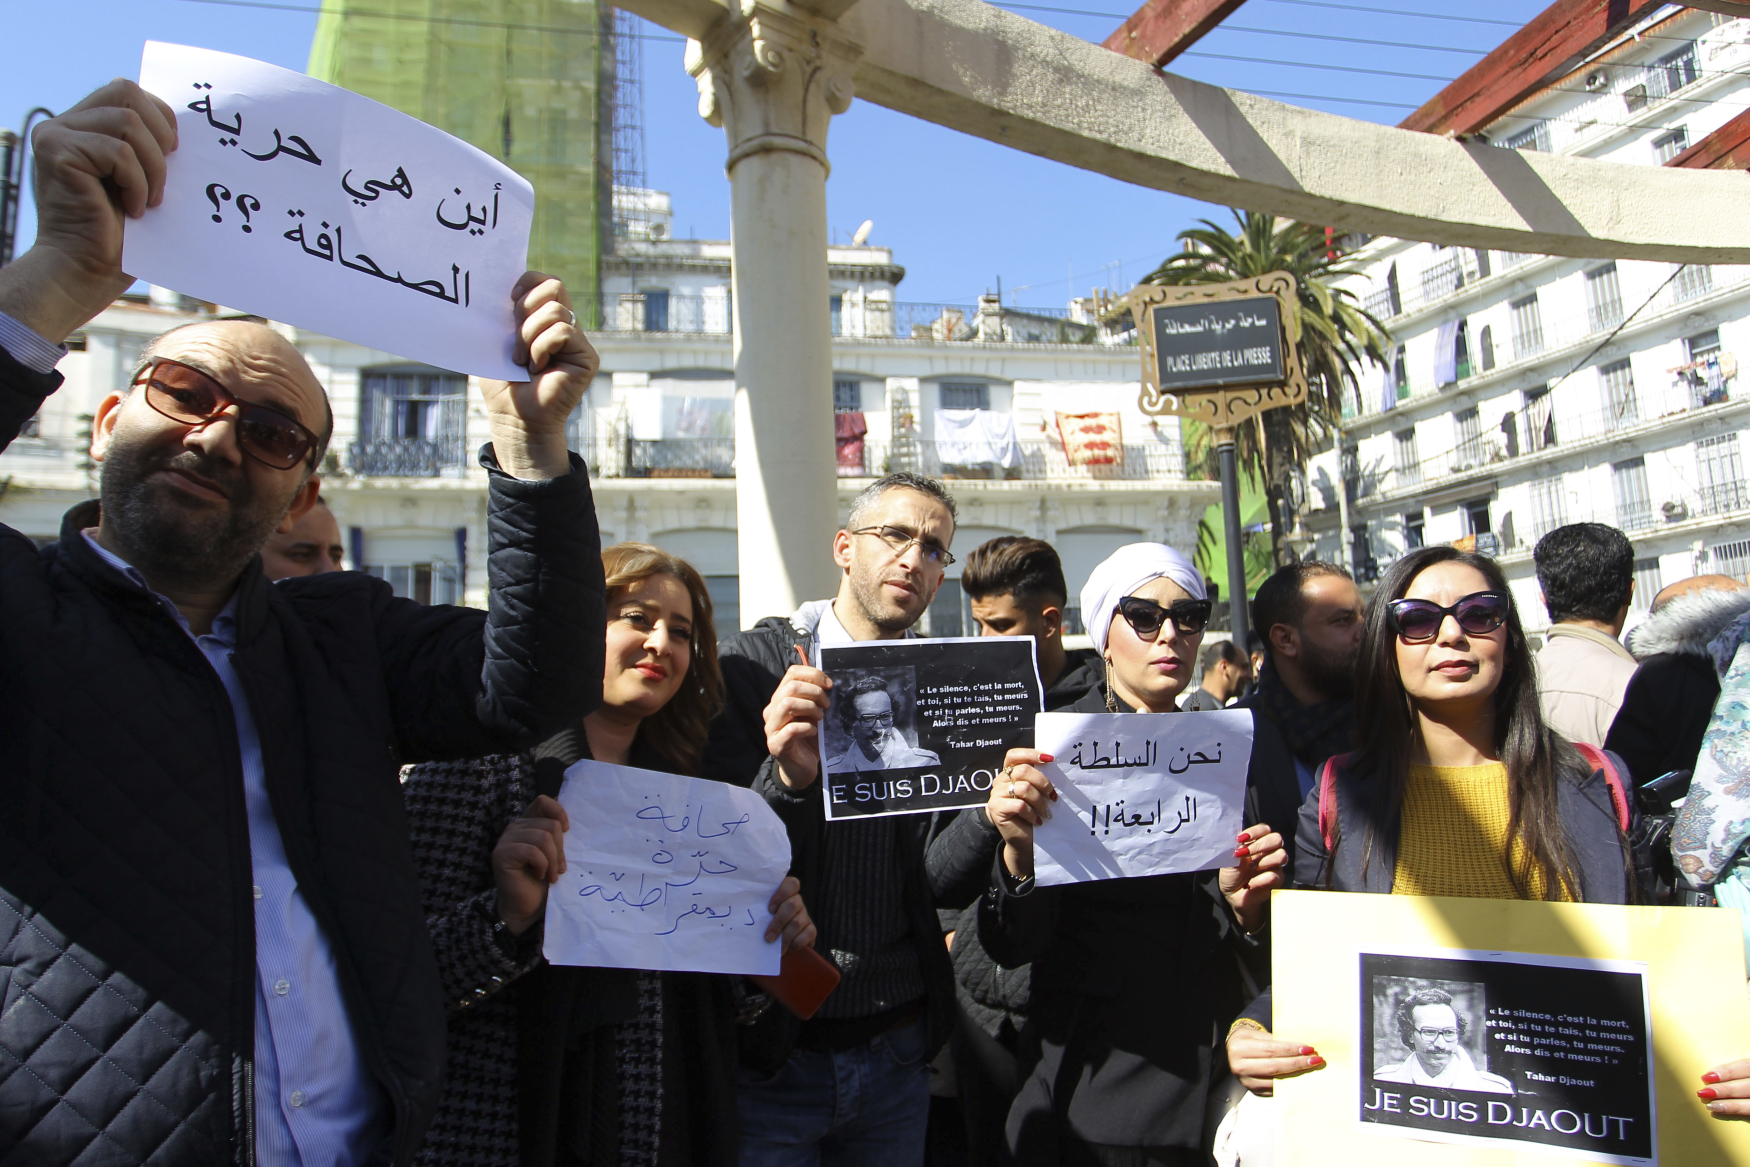 Novináři protestují proti svým médiím, která jim údajně bránila informovat o demonstracích proti alžírskému prezidentovi